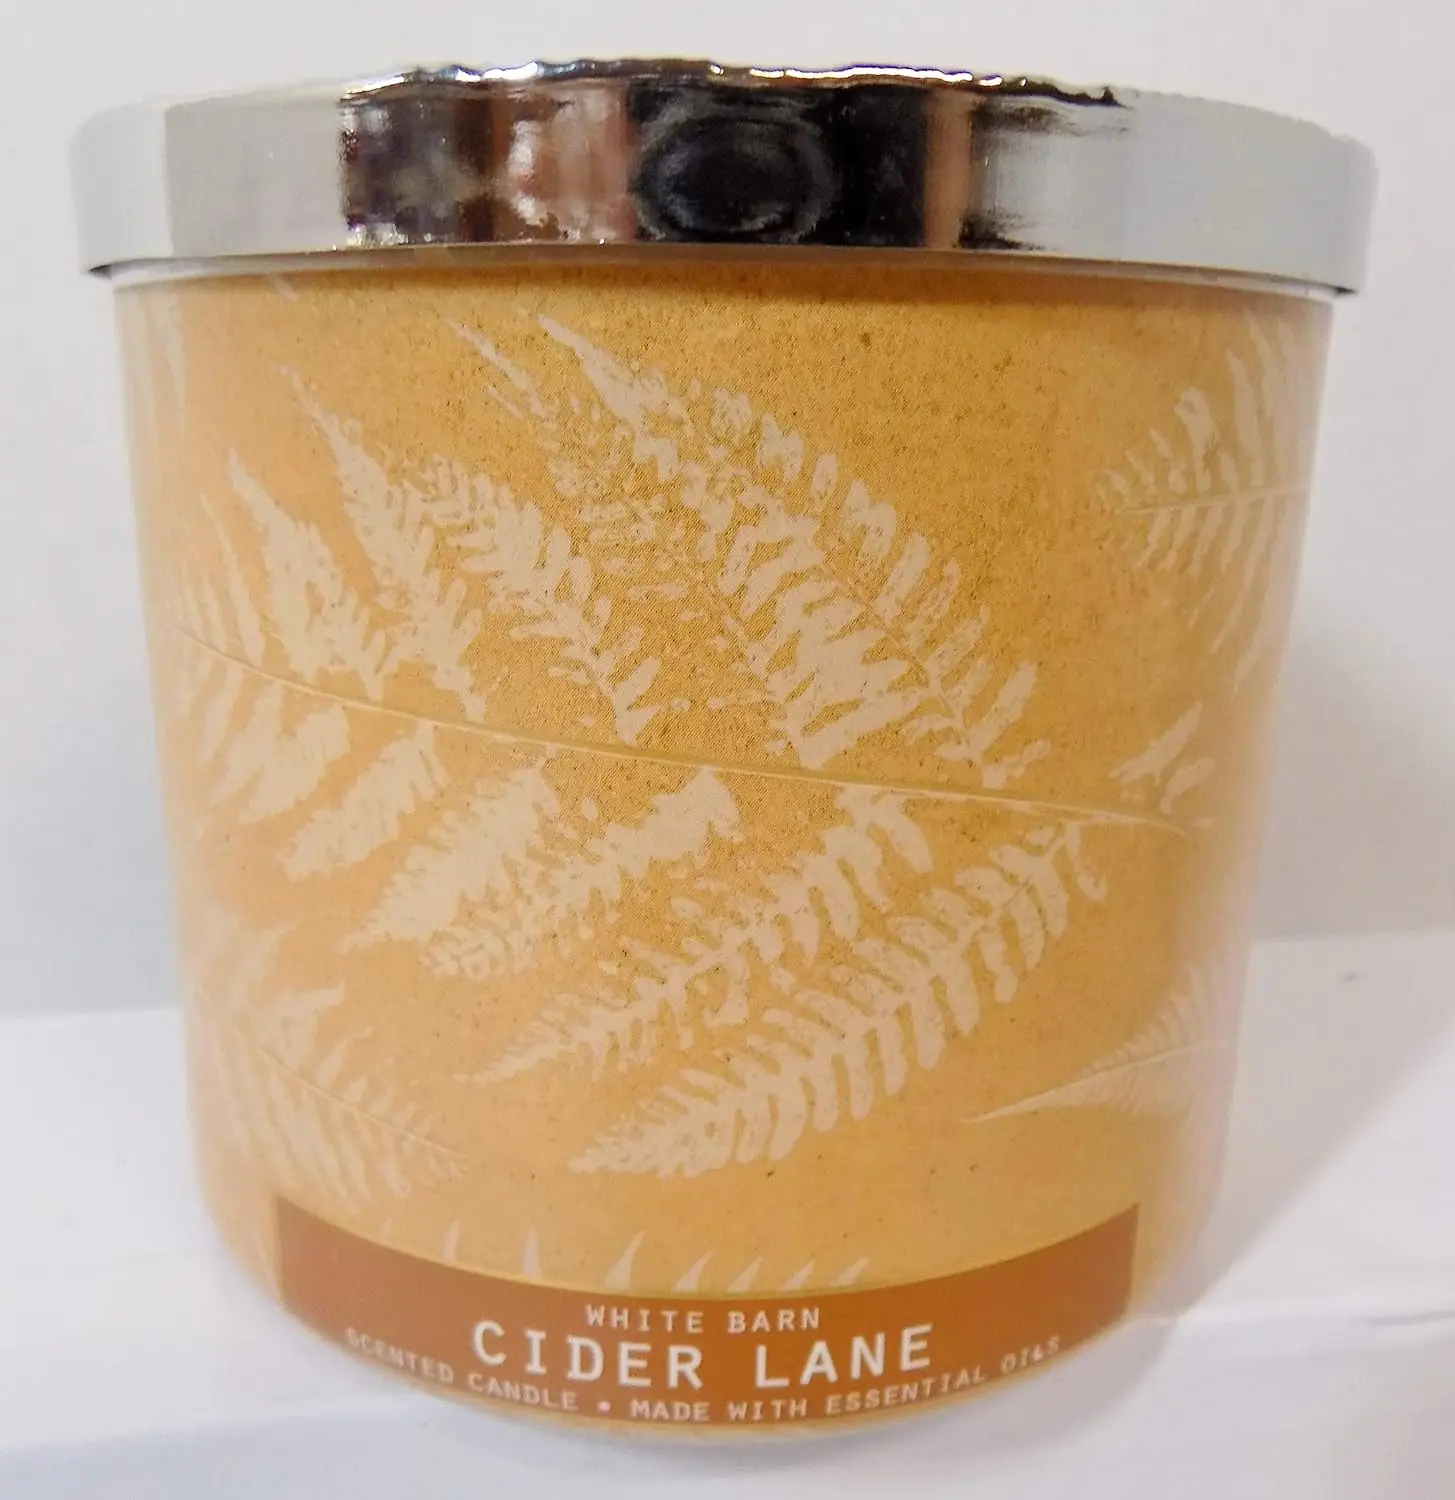 

Cider Lane (Caramel, Granny Apples, Dark Brown Sugar, Clove) Made W Essential Oils 3 Wick 14.5 oz Car air freshener Ambientador